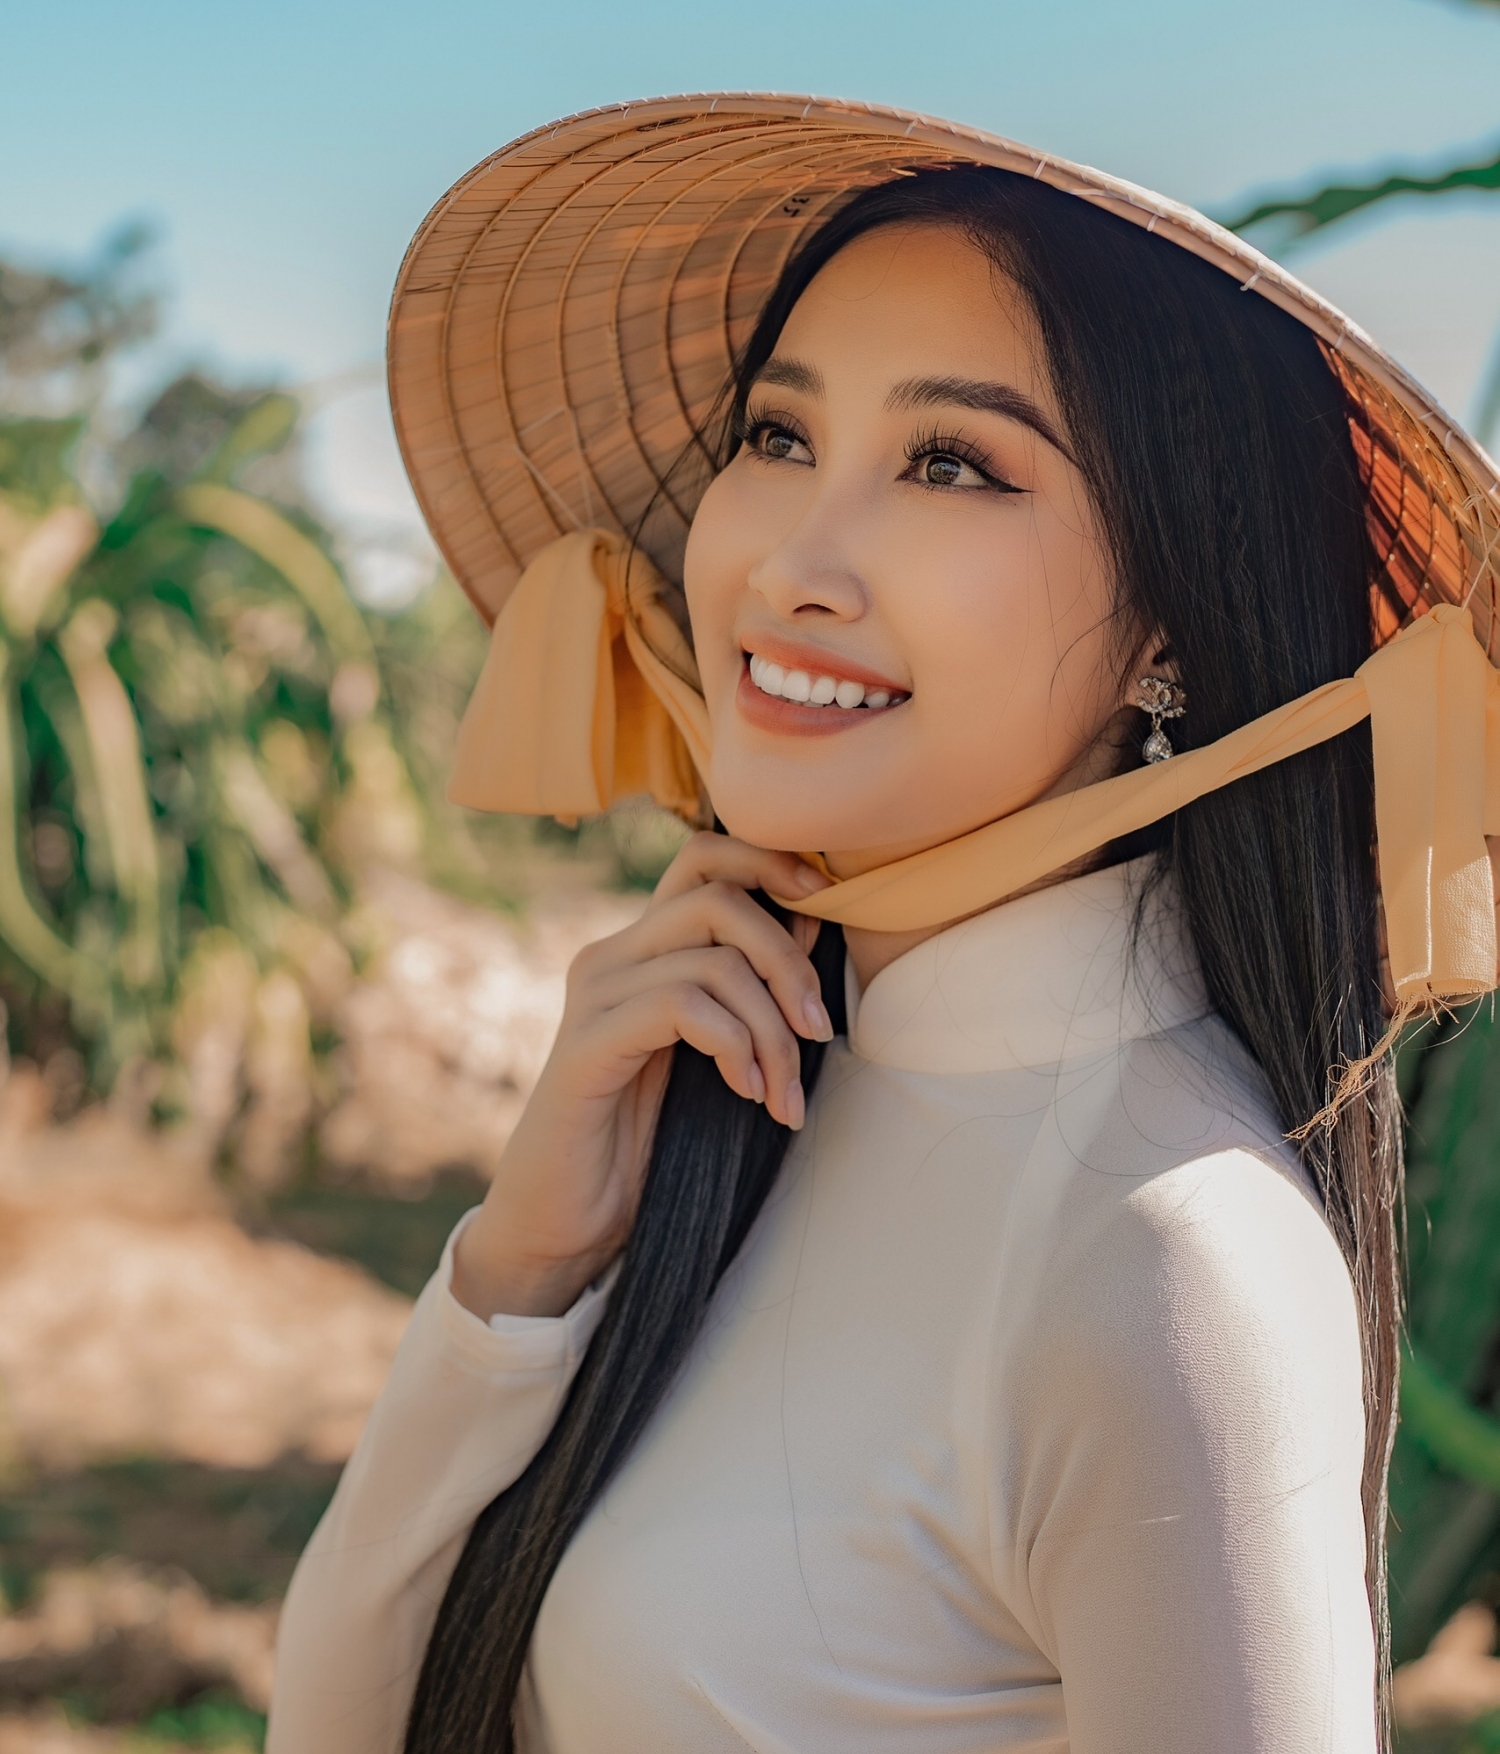 Đoàn Hồng Trang chính thức được cấp phép thi Miss Eco International 2020